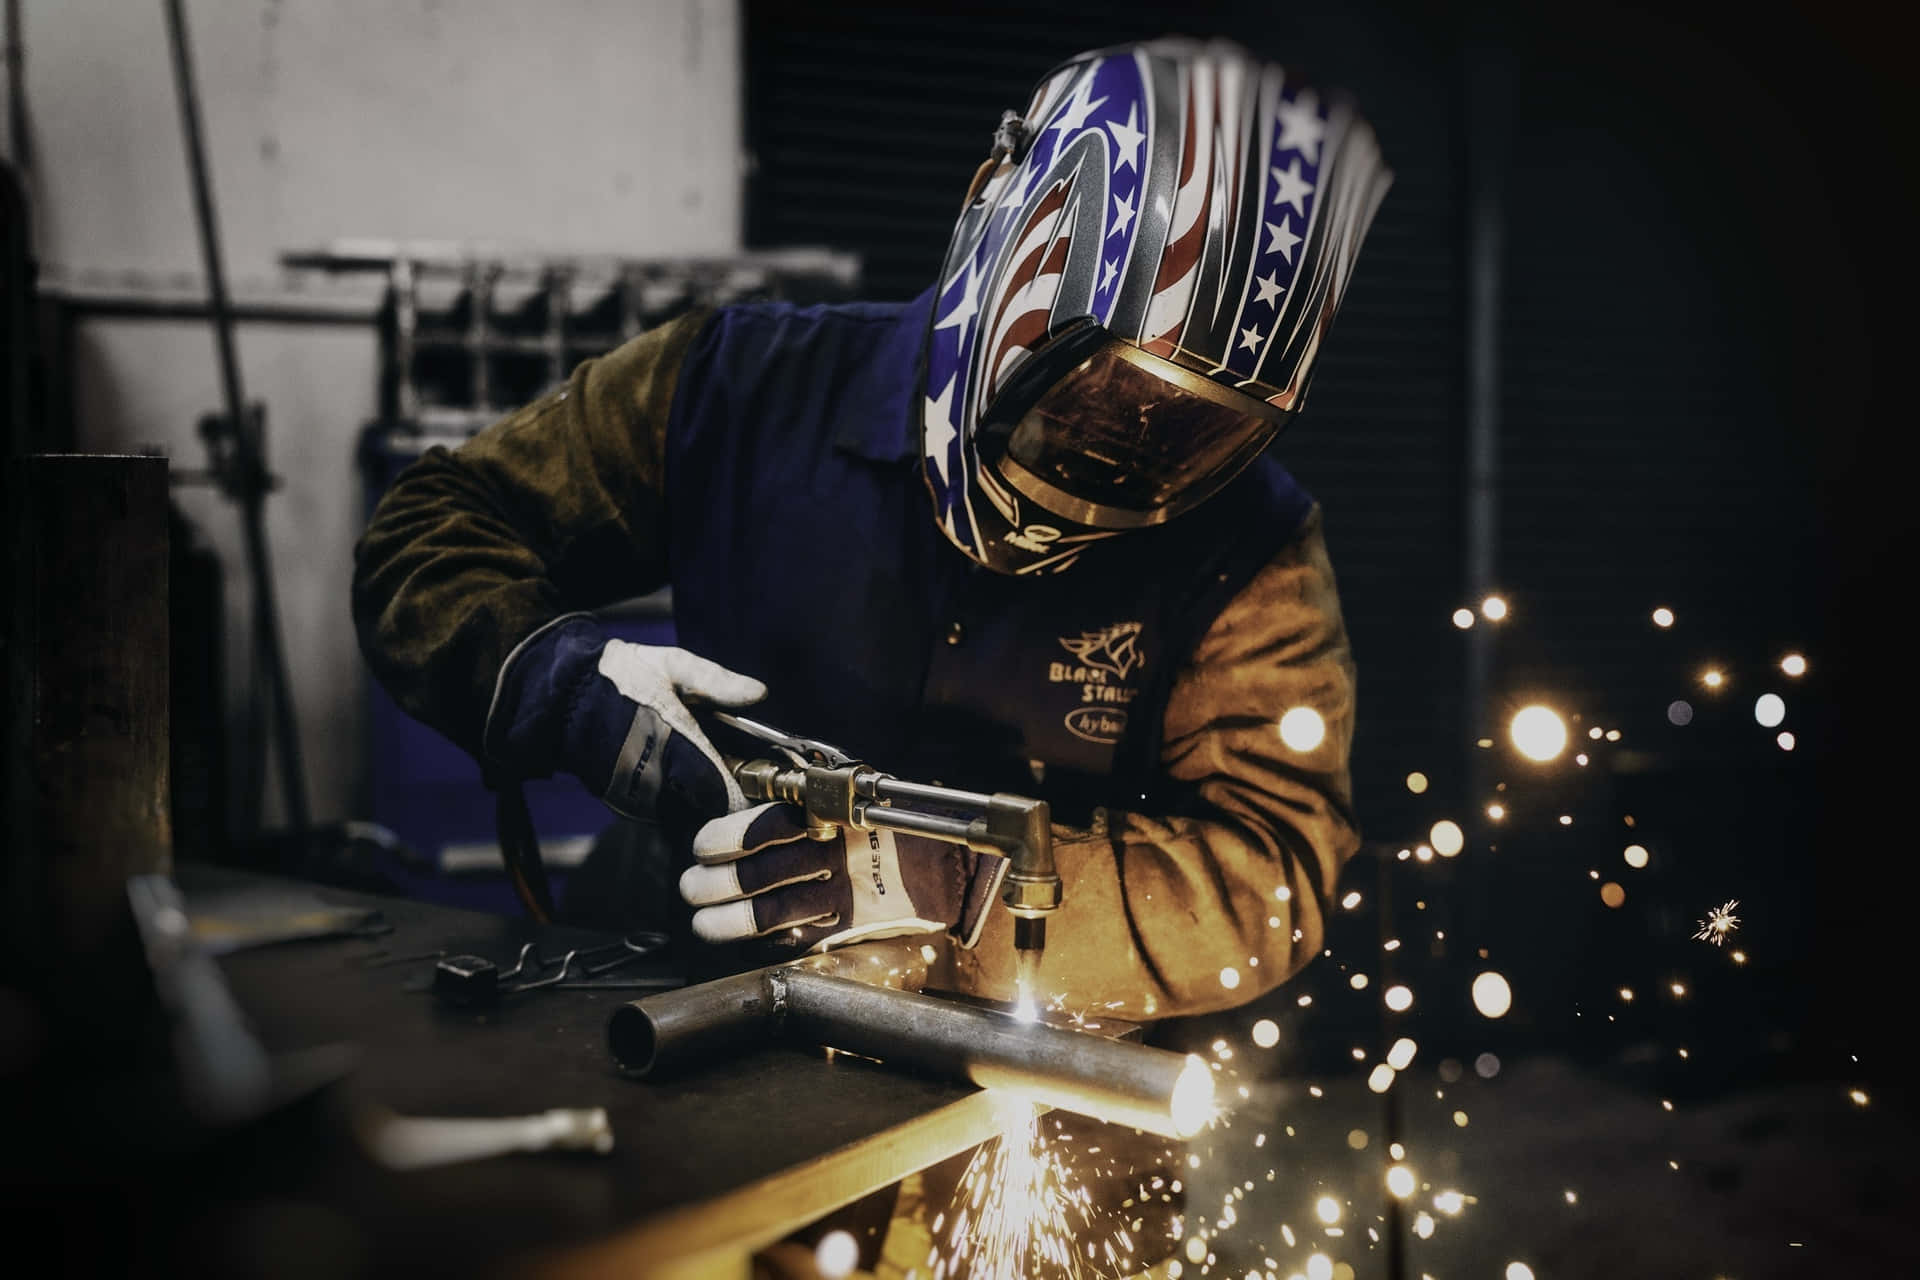 A skilled welder fabricating a metal sculpture Wallpaper